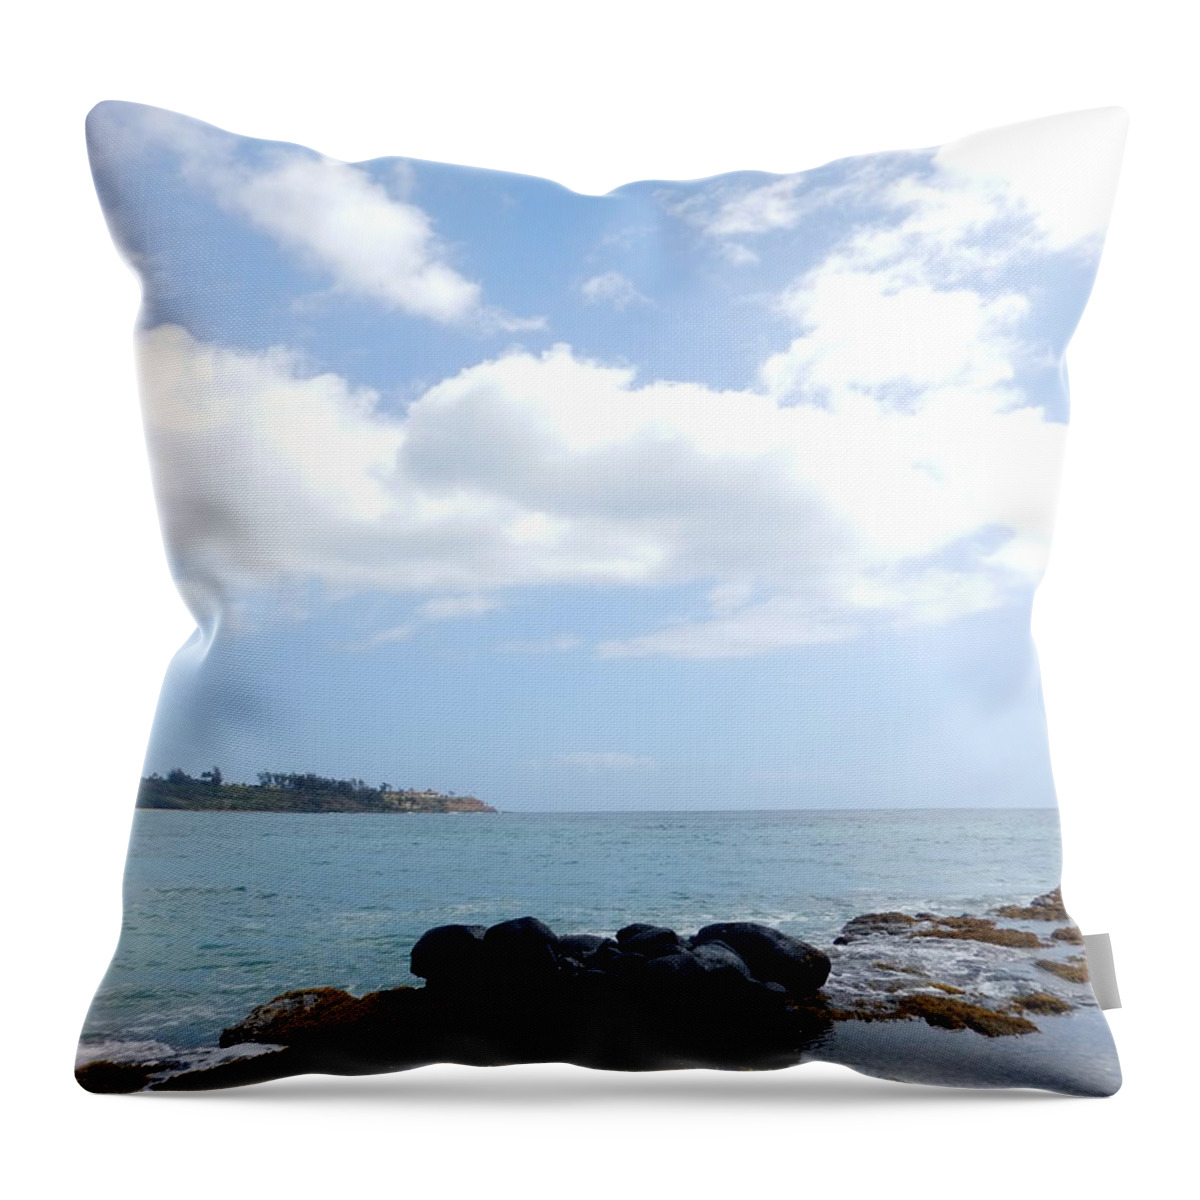 Kauai Throw Pillow featuring the photograph Kauai Coastline by Amy Fose